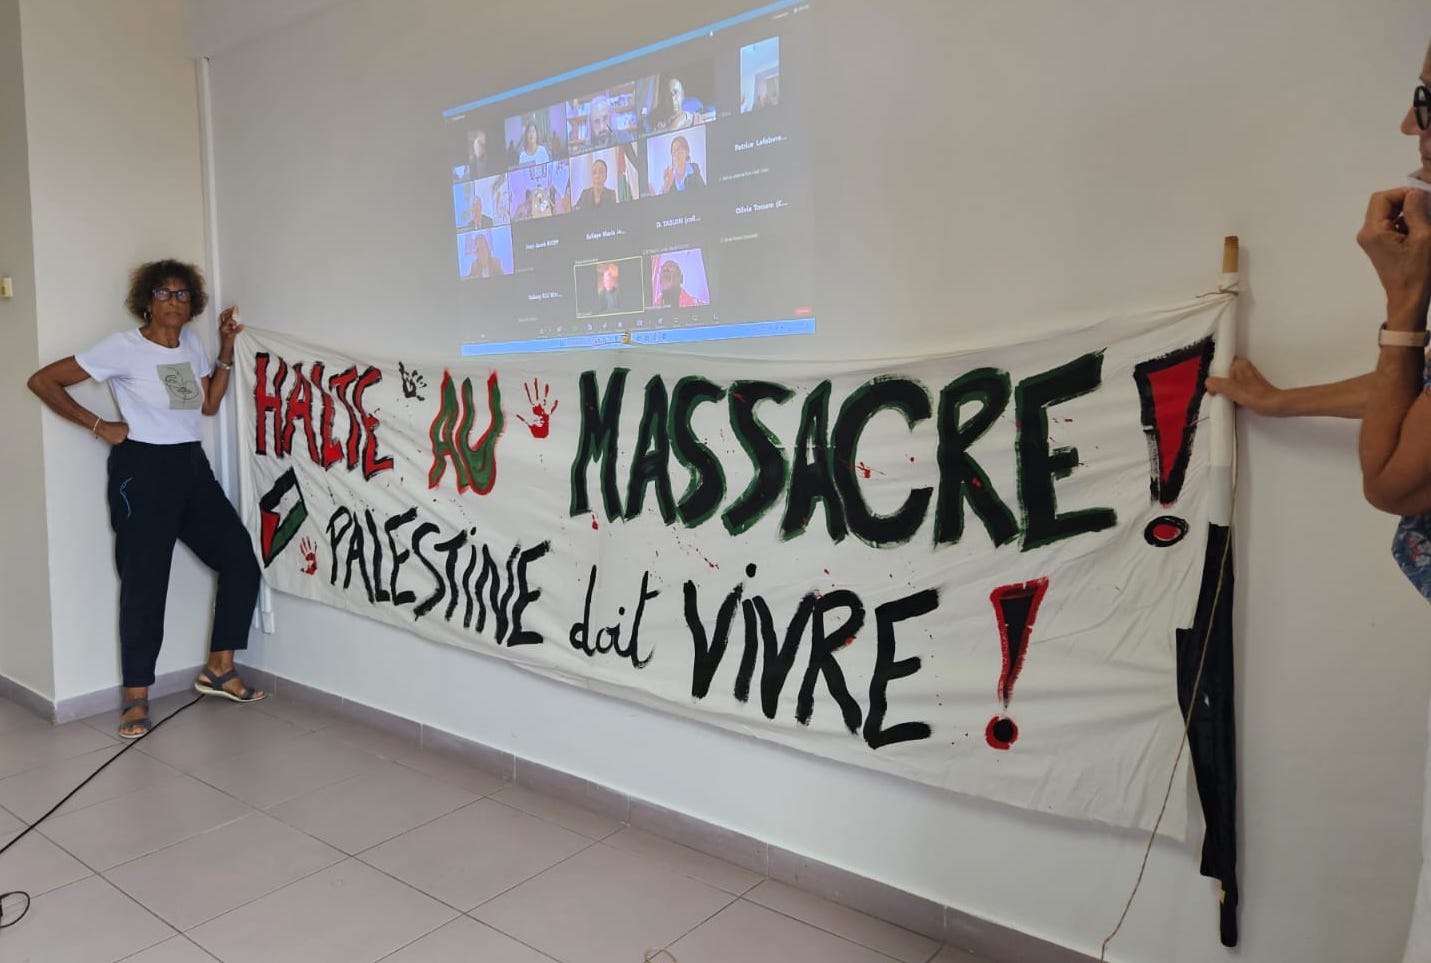     En Martinique, des voix s’élèvent pour demander la paix en Palestine

